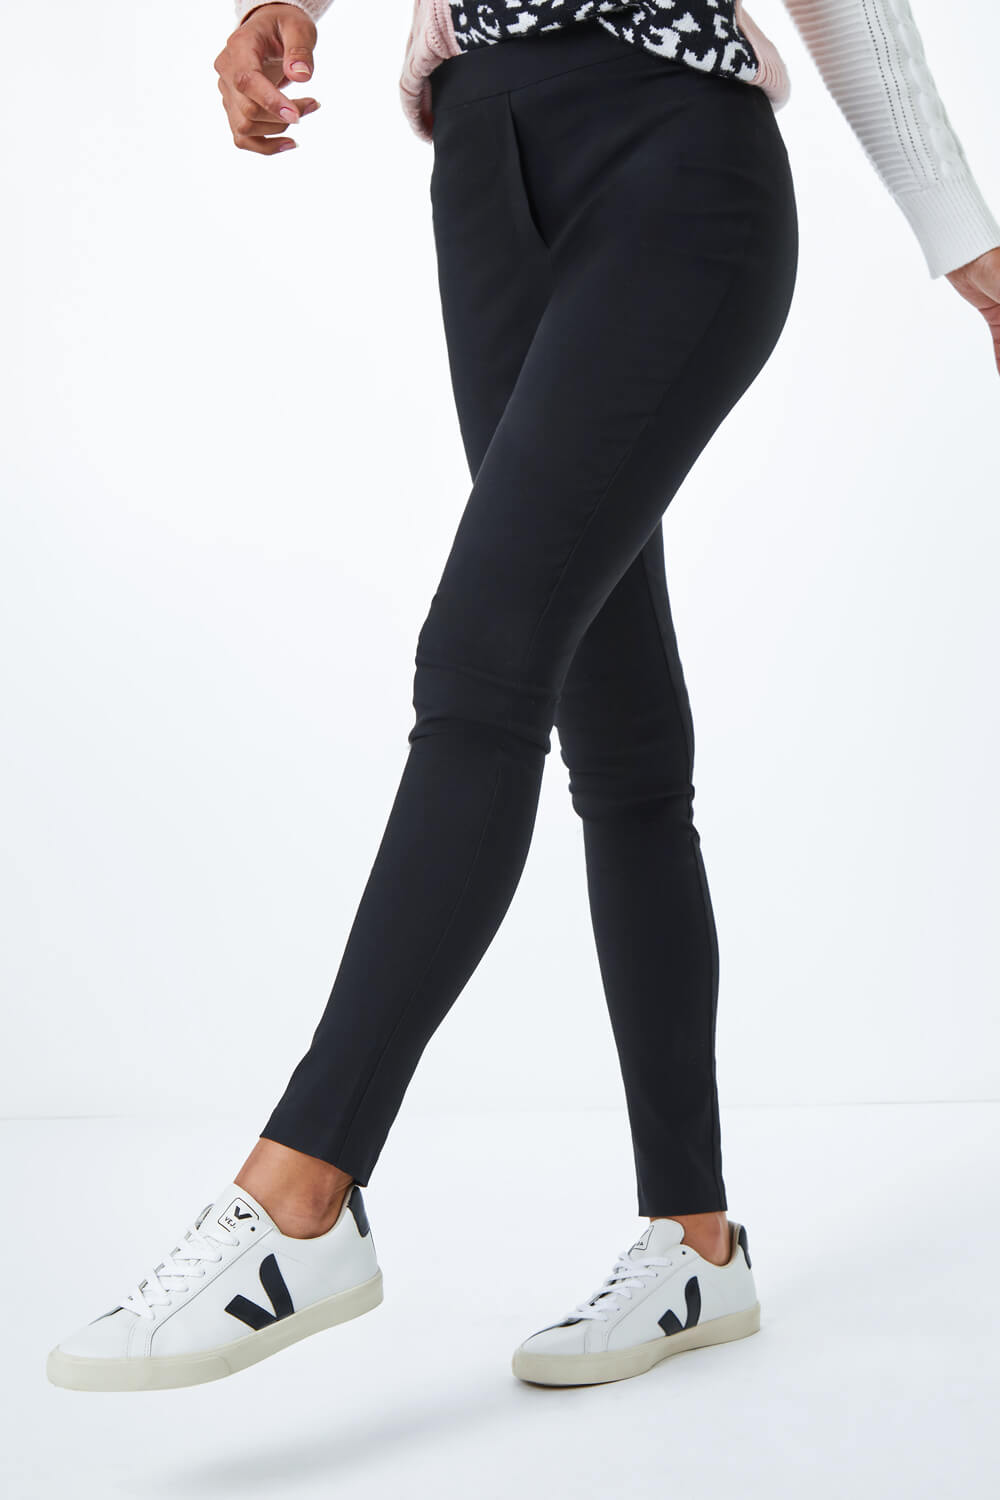 Black 31" Full Length Stretch Trouser, Image 1 of 4